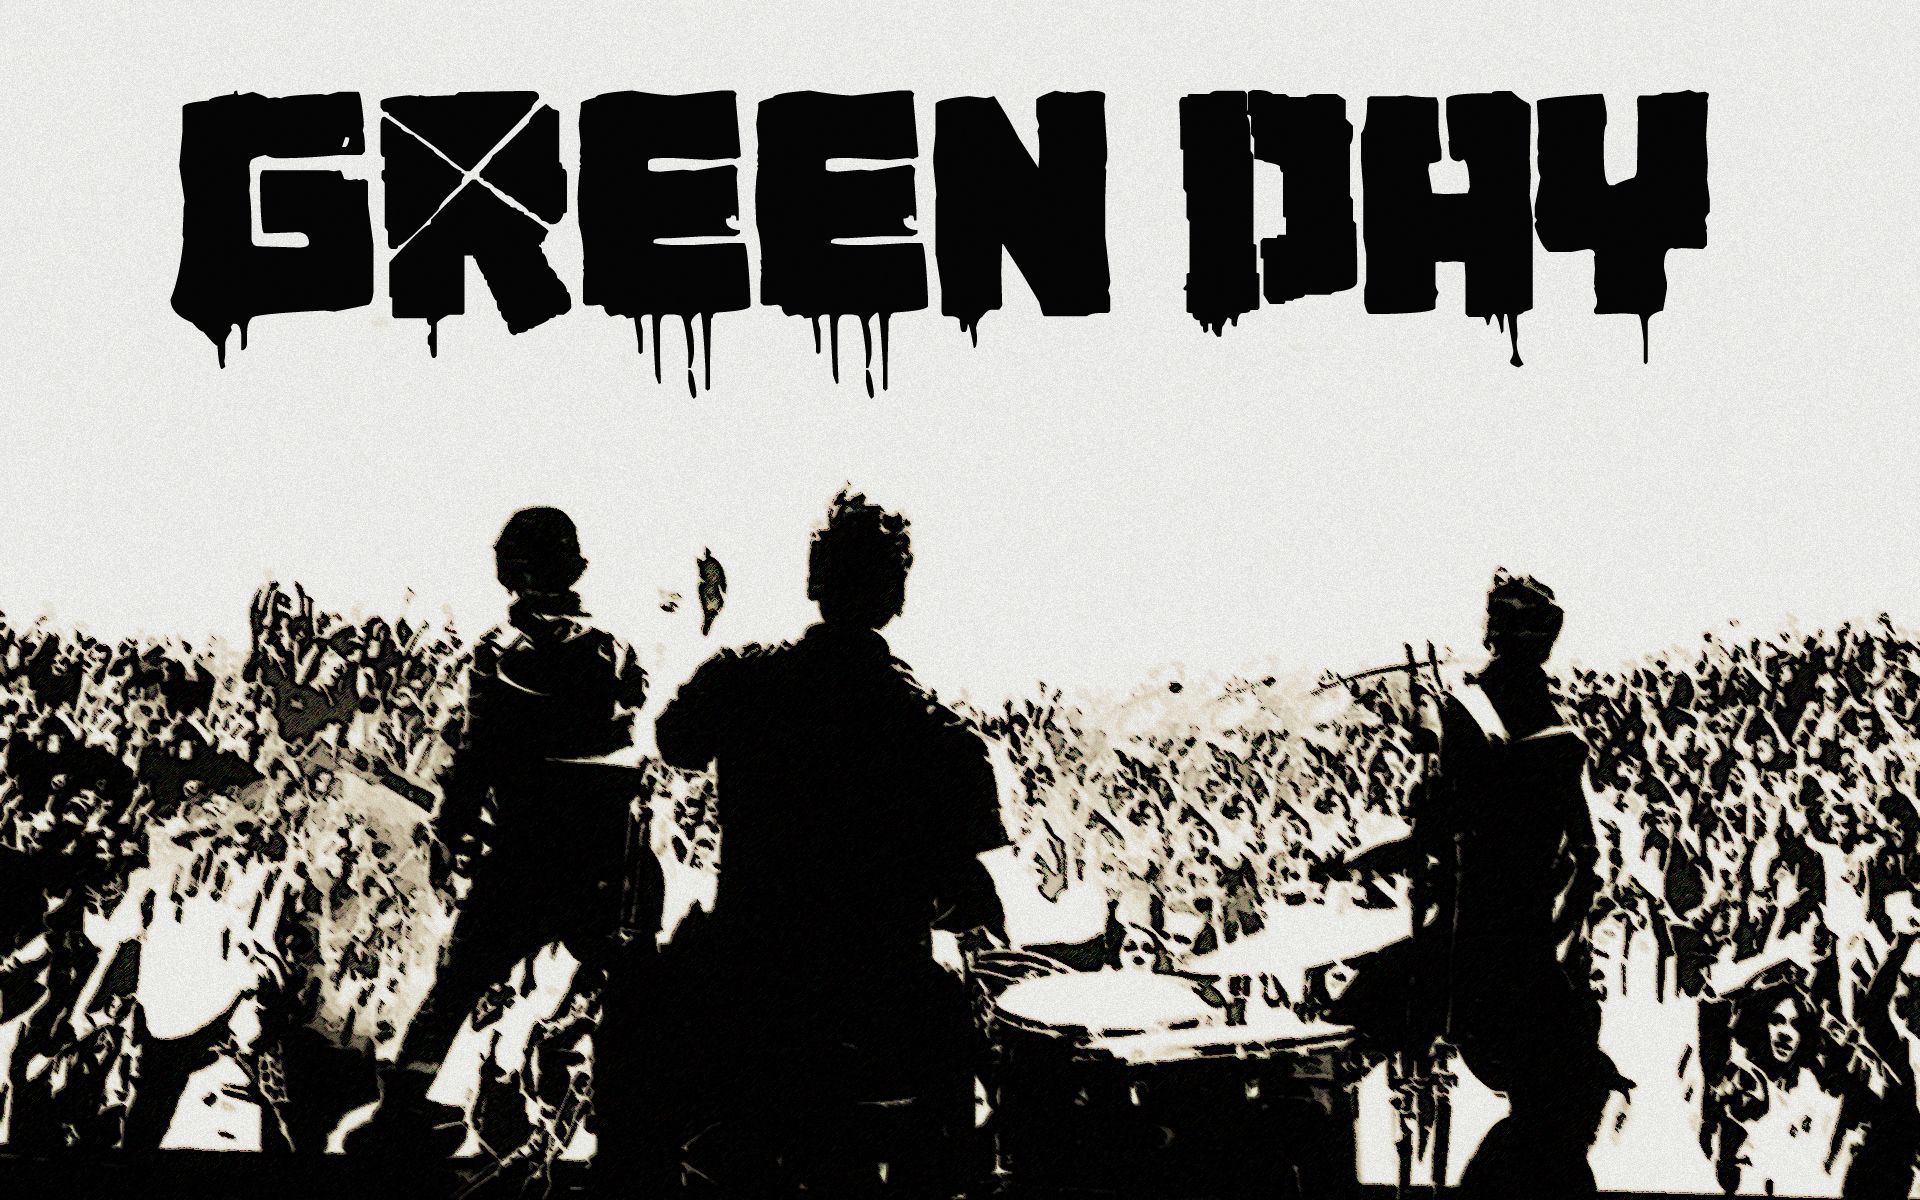 Fondos de Green Day gratis # 6NZC44O - 4USkY